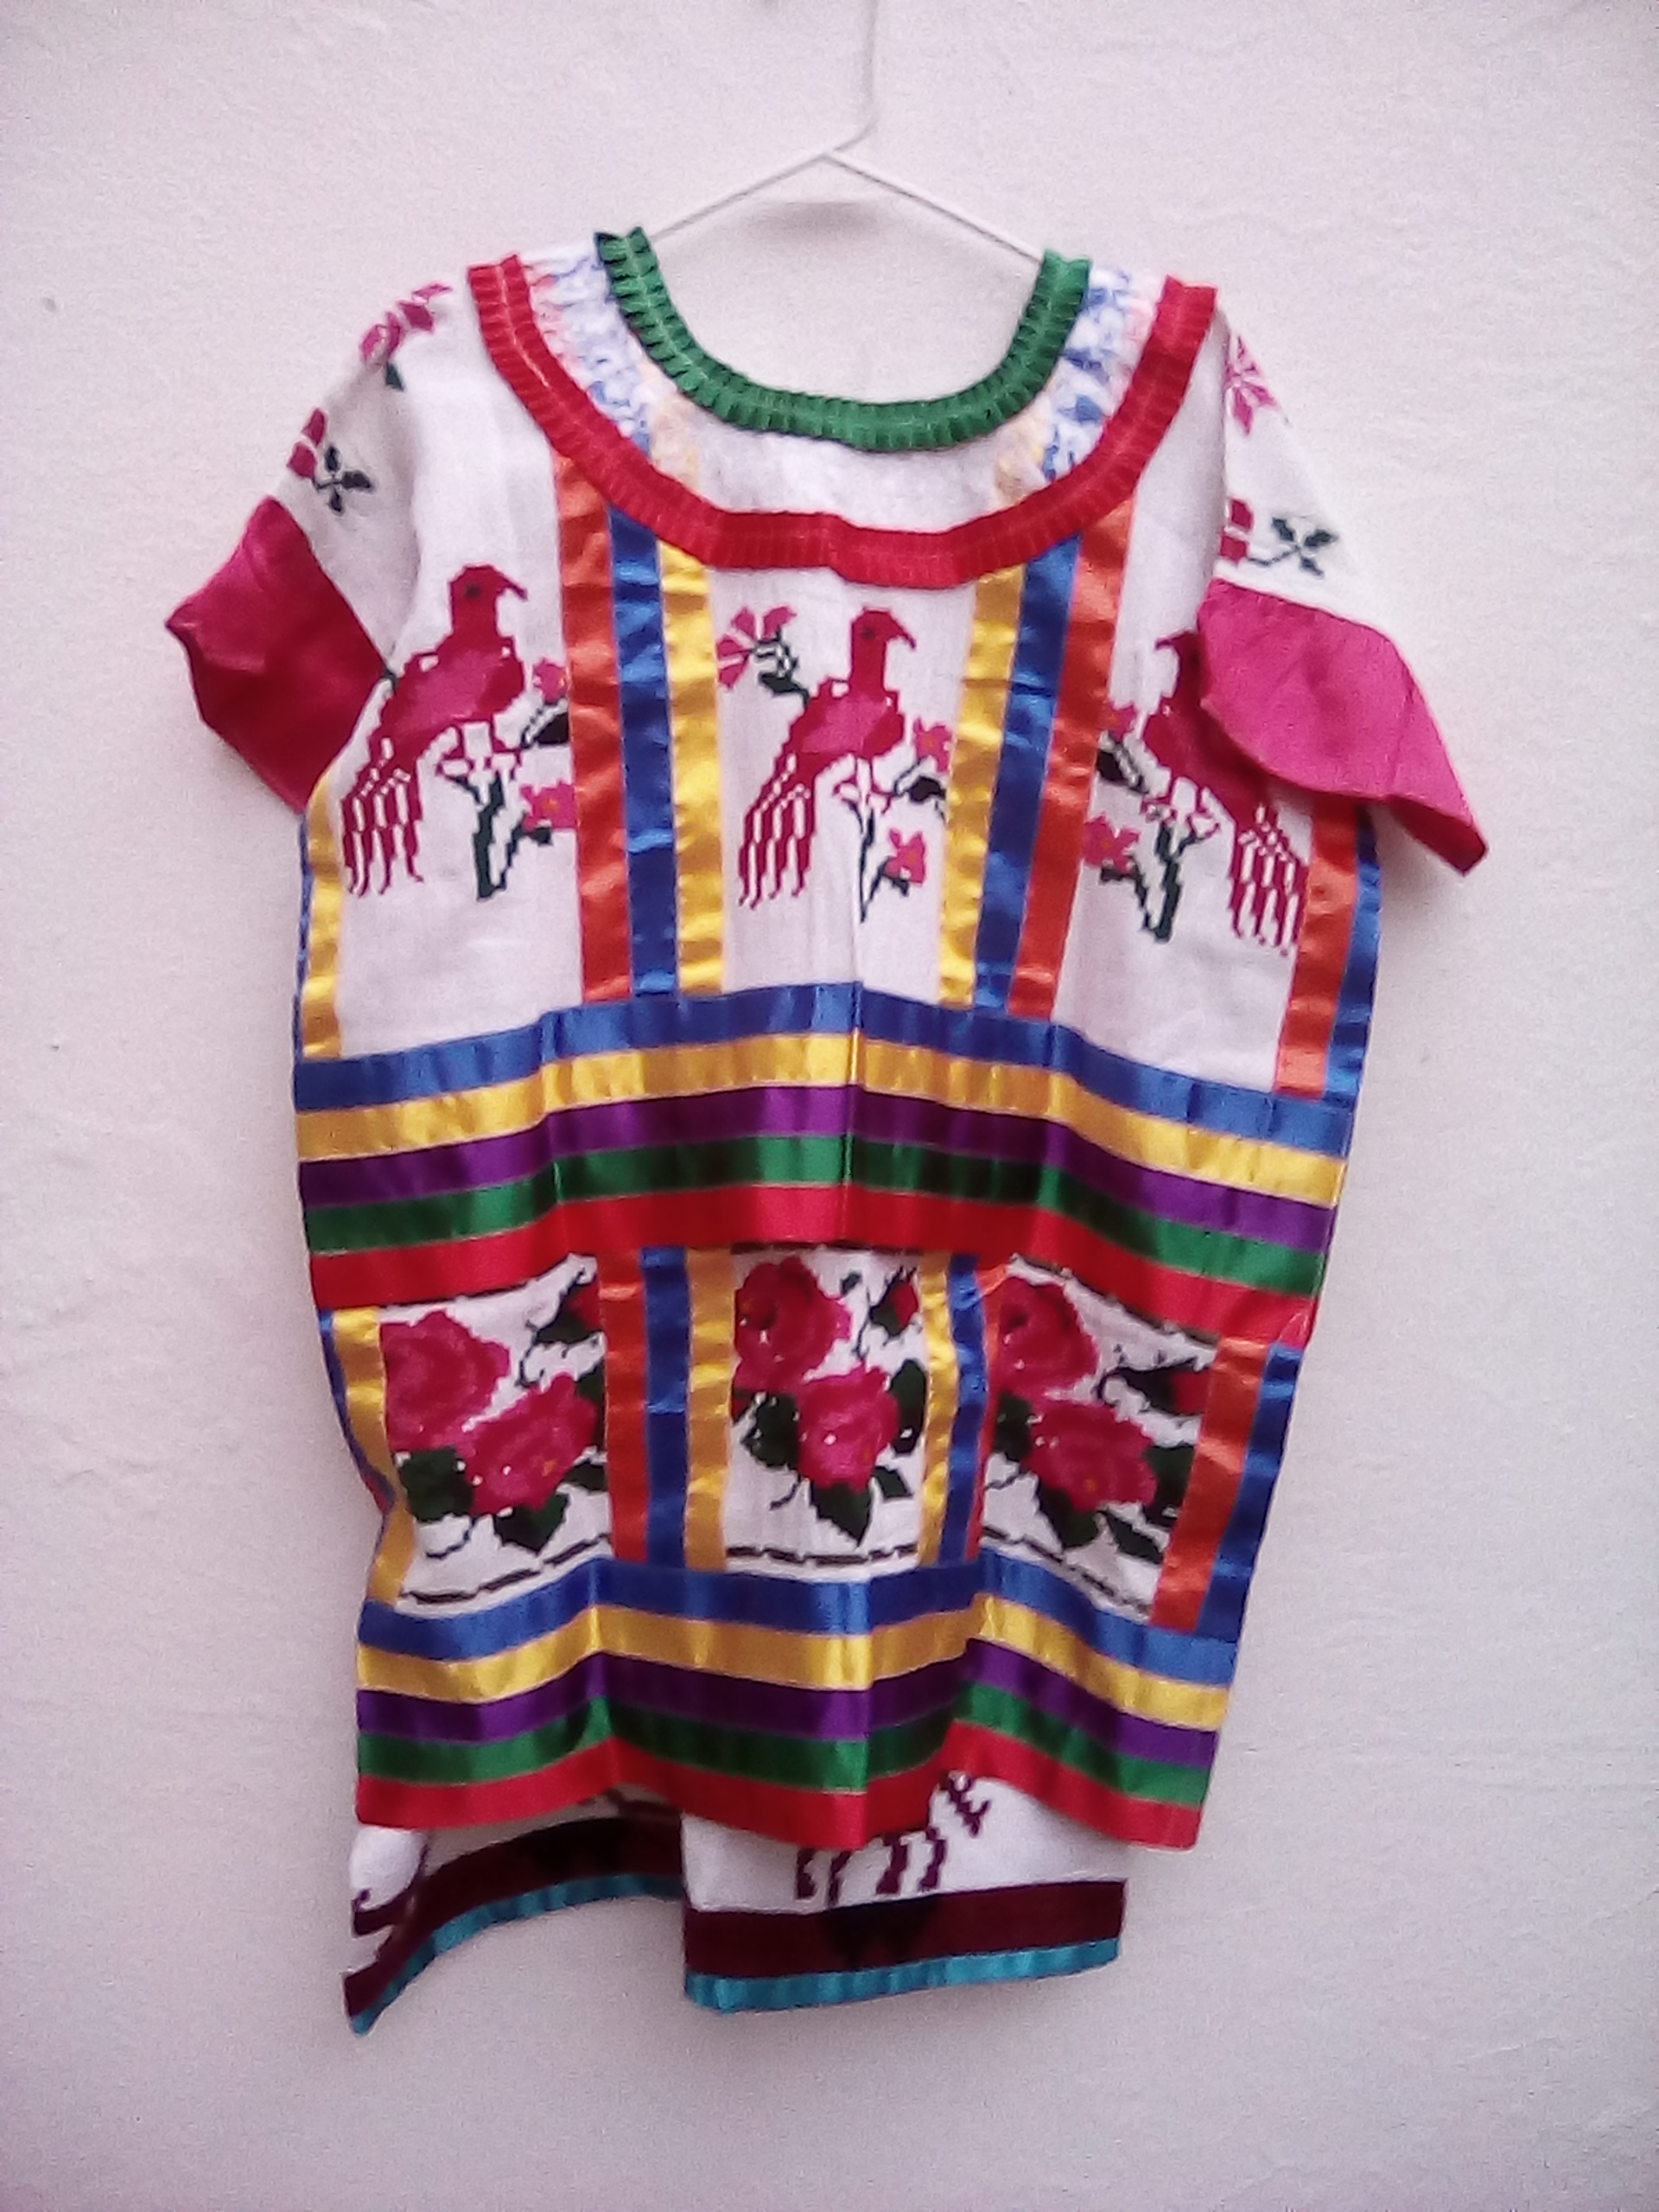 Oaxaca Flor de Piña Folklorico Regional Costume Dress Adult